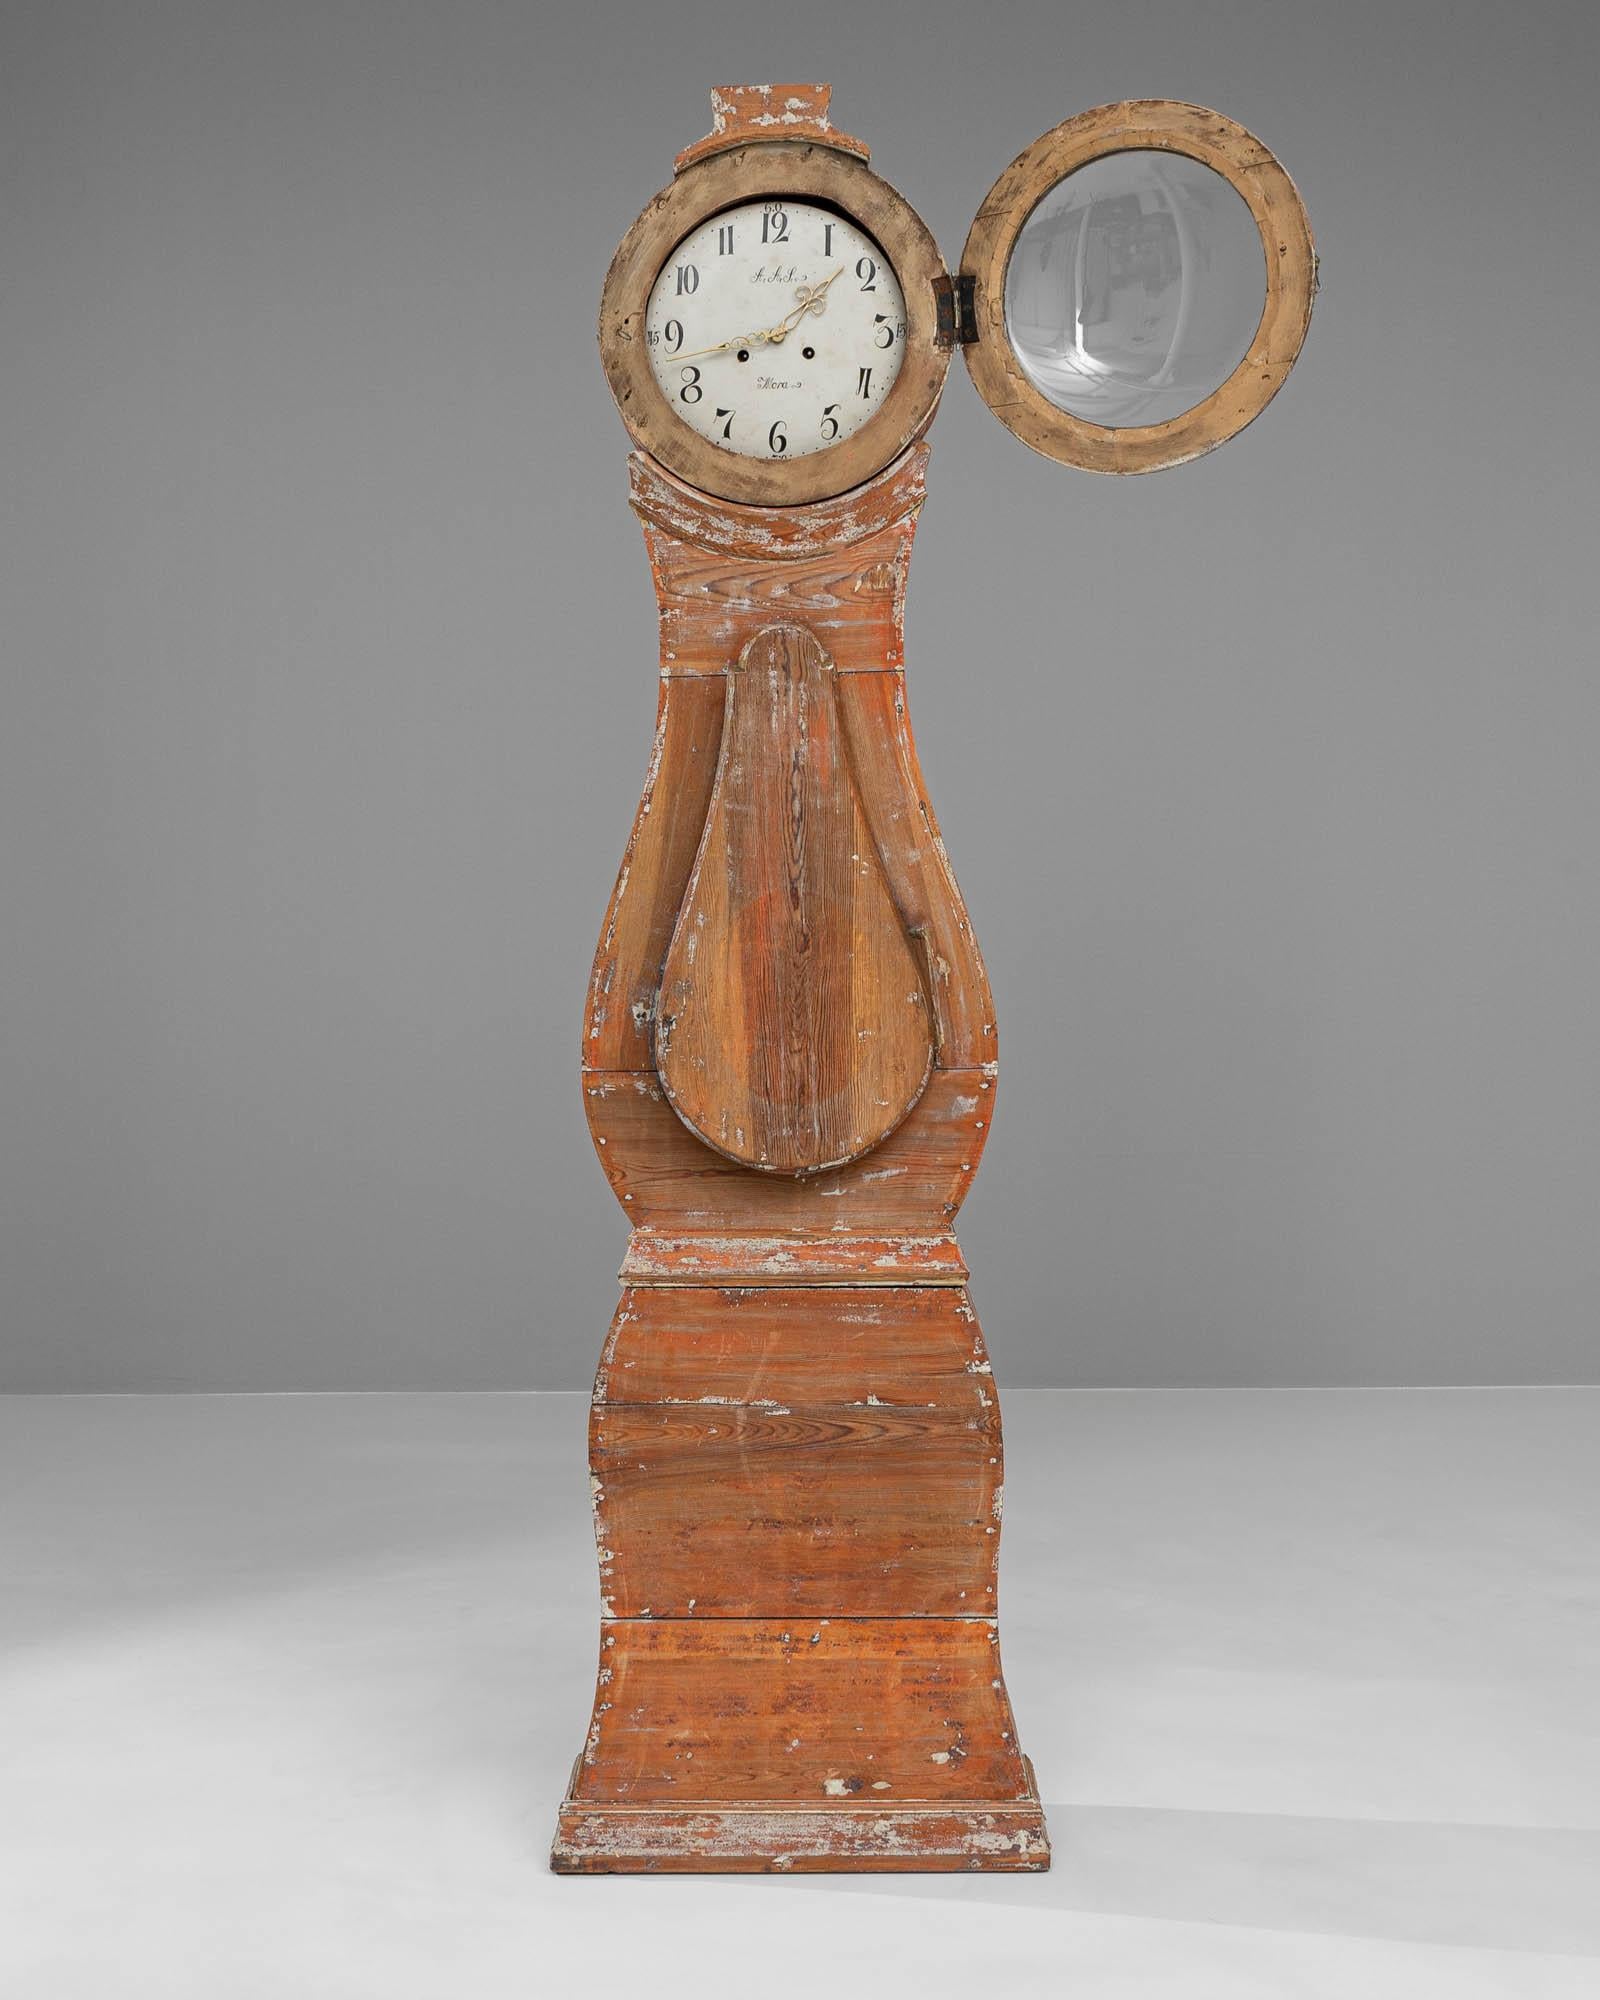 Cette horloge de sol suédoise en bois du début du XIXe siècle est un trésor rustique, qui fait écho à la simplicité et à la durabilité du design scandinave. Sa surface en bois vieilli, qui arbore la teinte chaude et rougeâtre du chêne usé par le